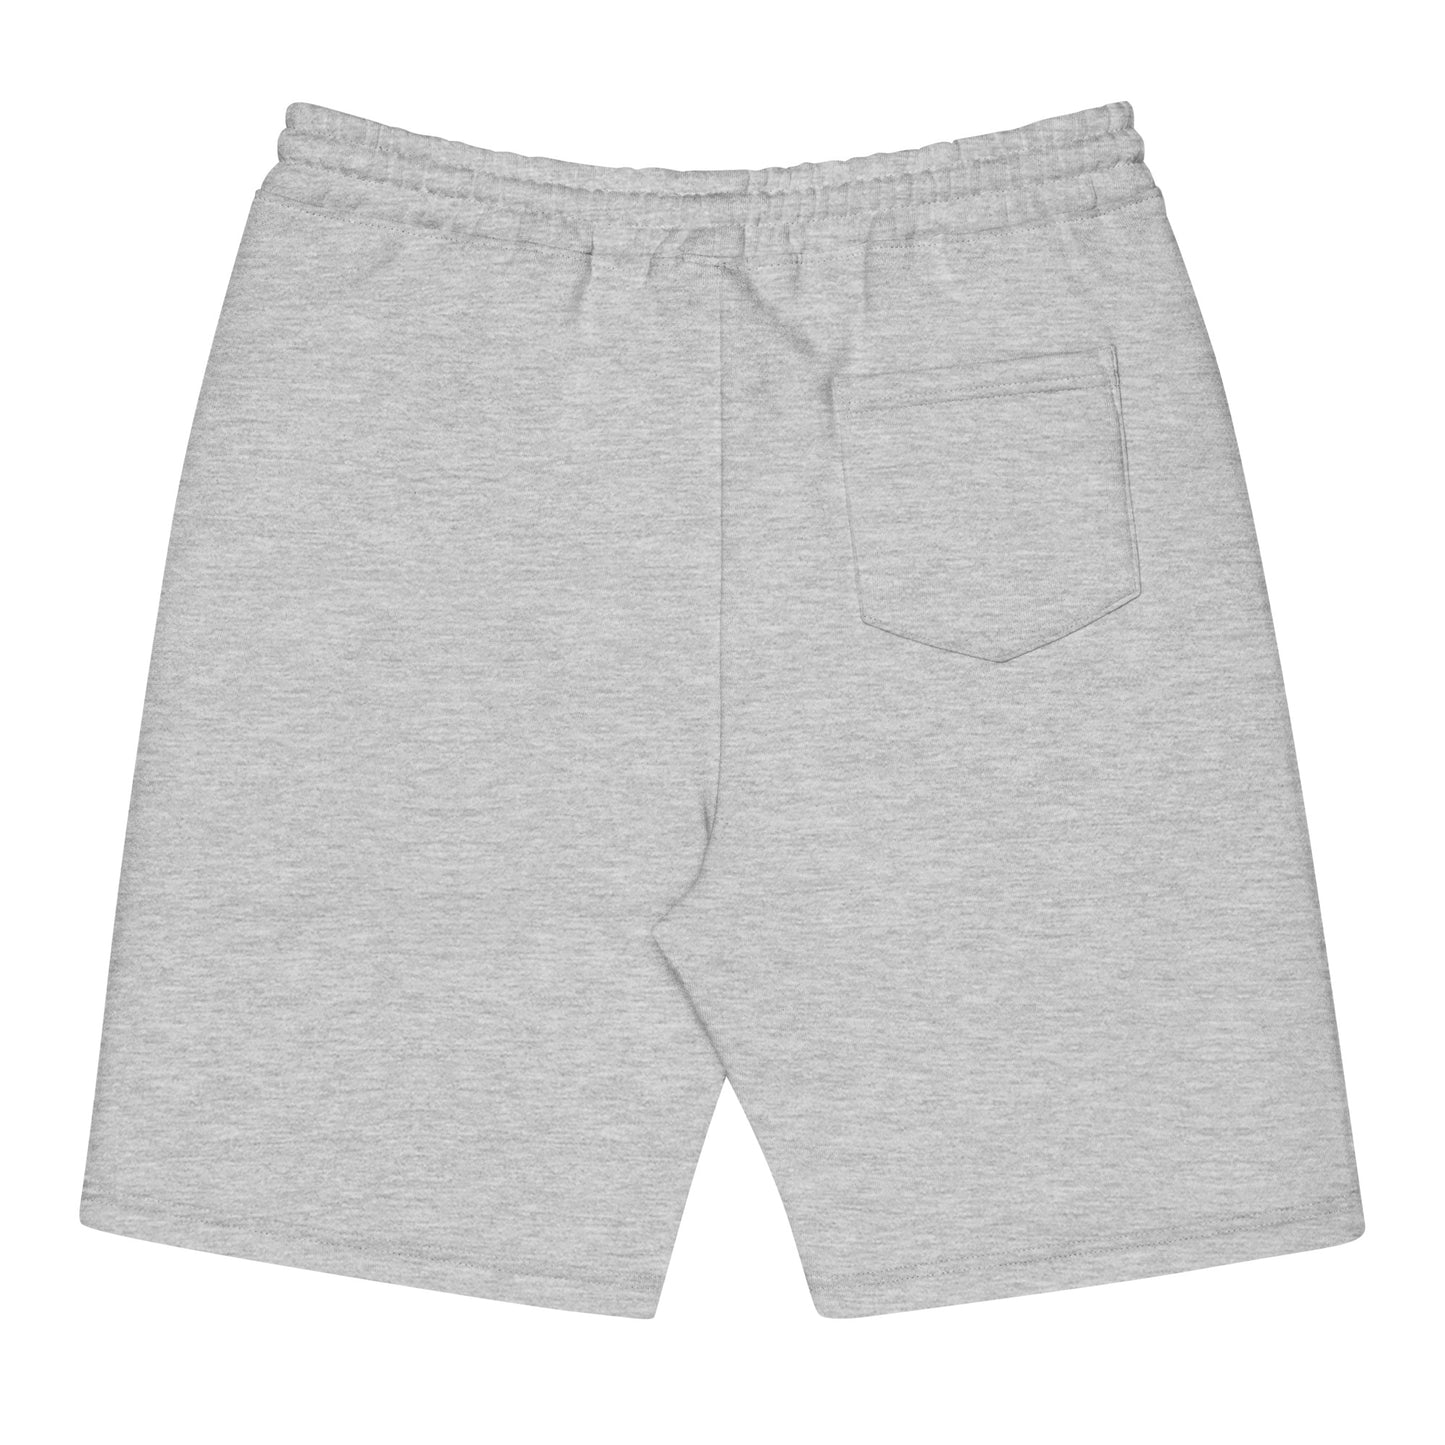 PARRISPIECES Fleece Shorts - ParrisPieces